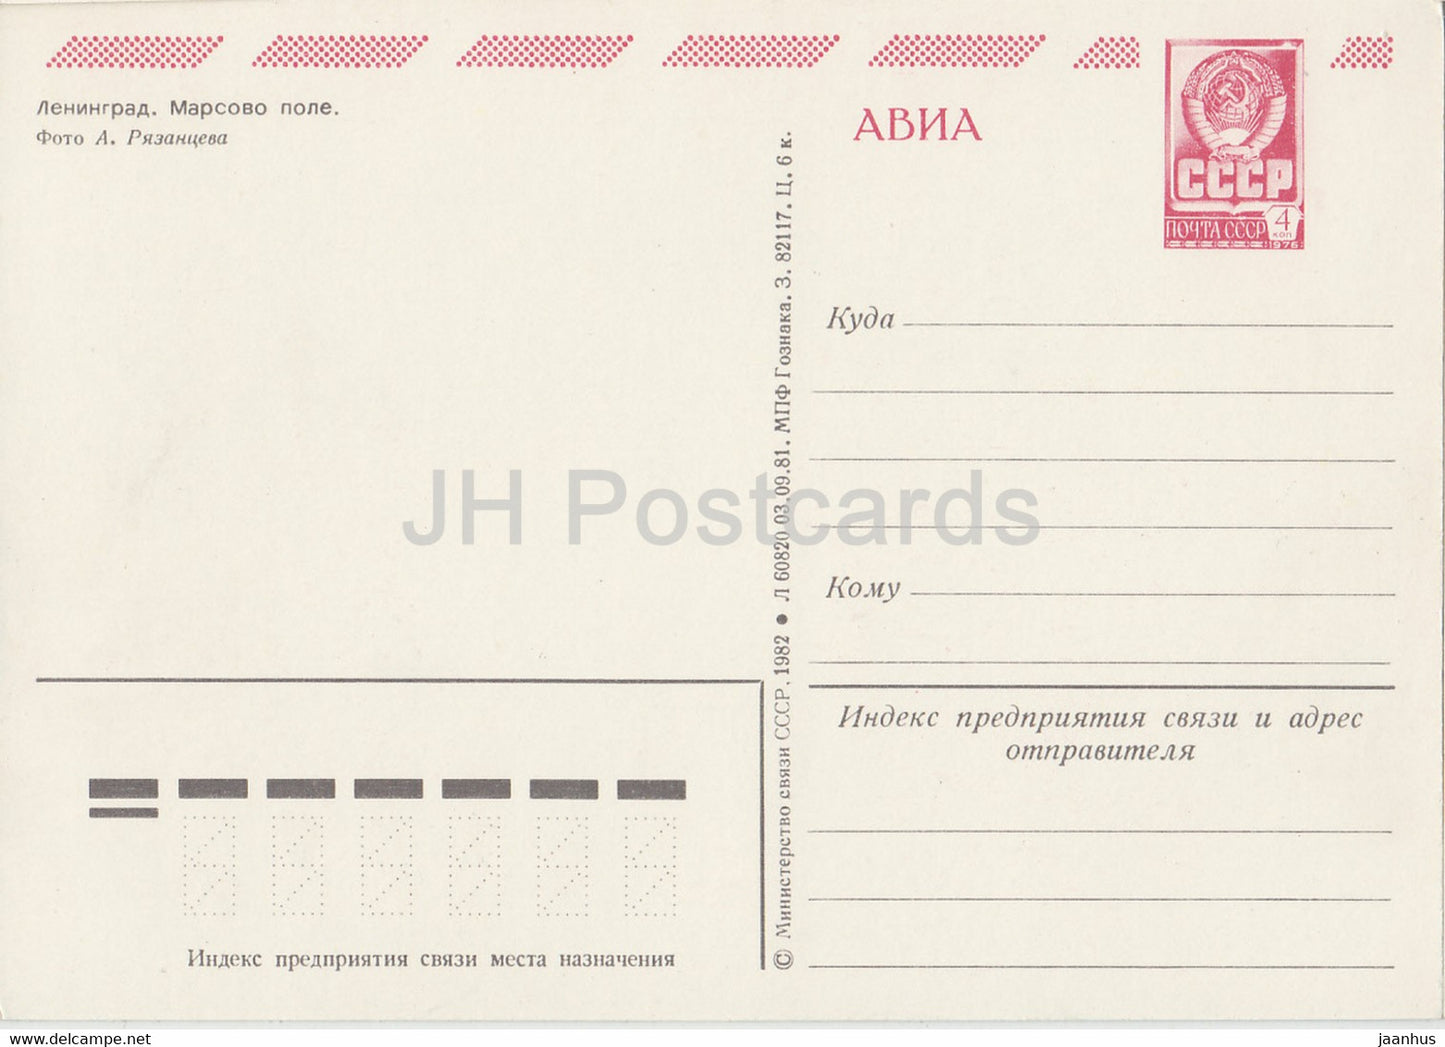 Leningrad - Saint-Pétersbourg - Le Champ de Mars - AVIA - entier postal - 1982 - Russie URSS - inutilisé